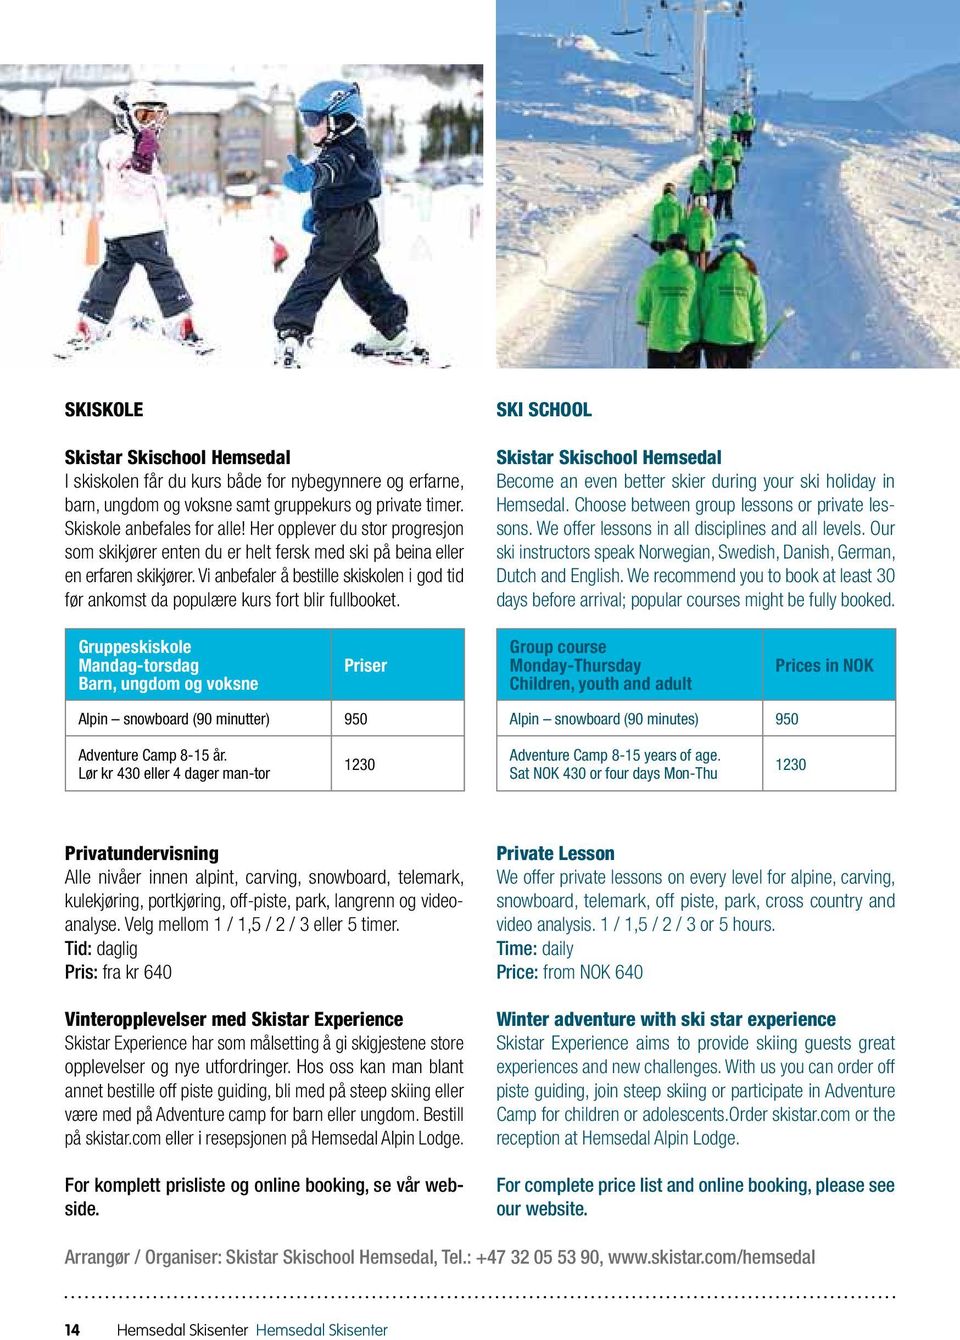 Vi anbefaler å bestille skiskolen i god tid før ankomst da populære kurs fort blir fullbooket. SKI SCHOOL Skistar Skischool Hemsedal Become an even better skier during your ski holiday in Hemsedal.